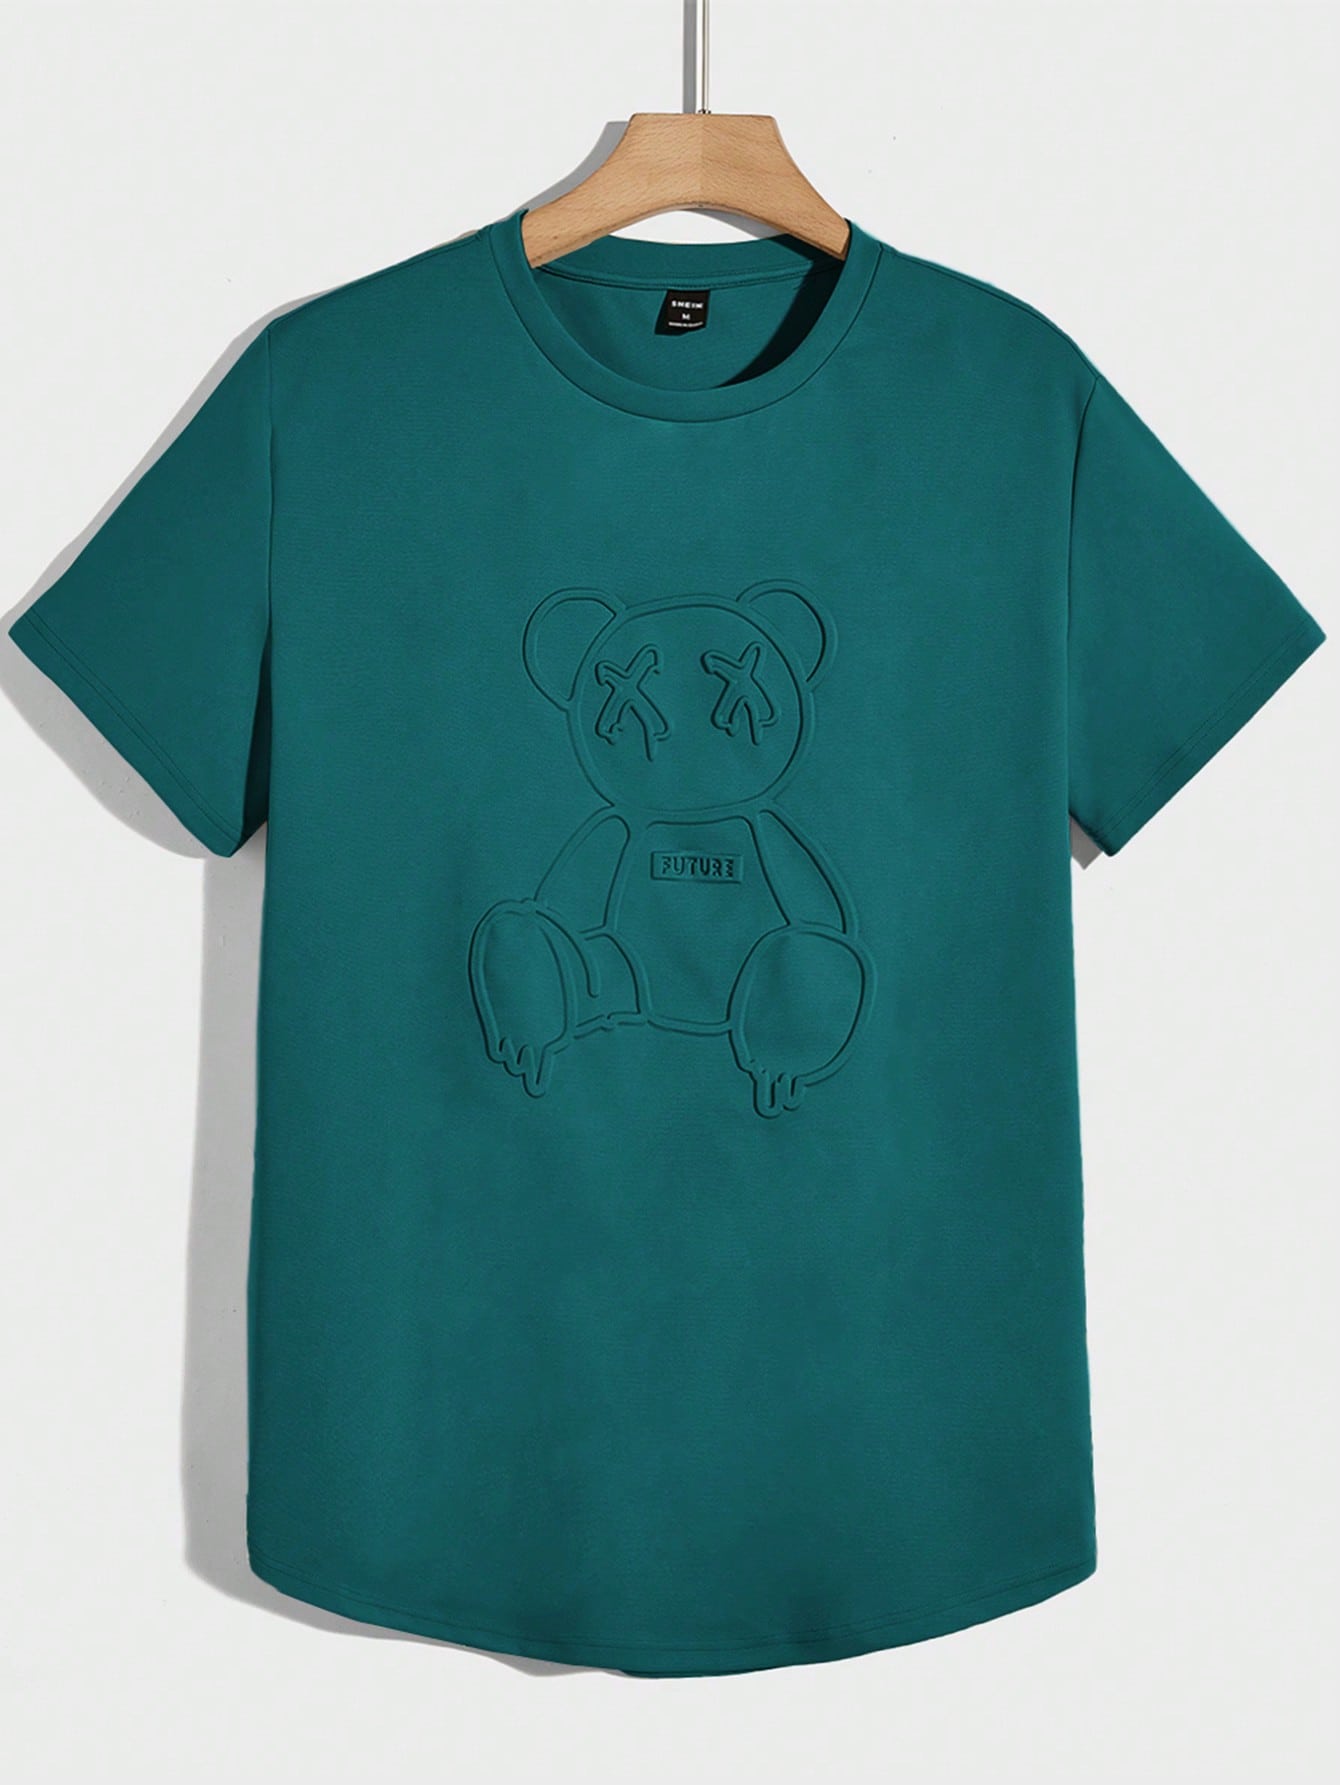 Мужская вязаная футболка Manfinity Hypemode с короткими рукавами и прессованным мишкой, зеленый